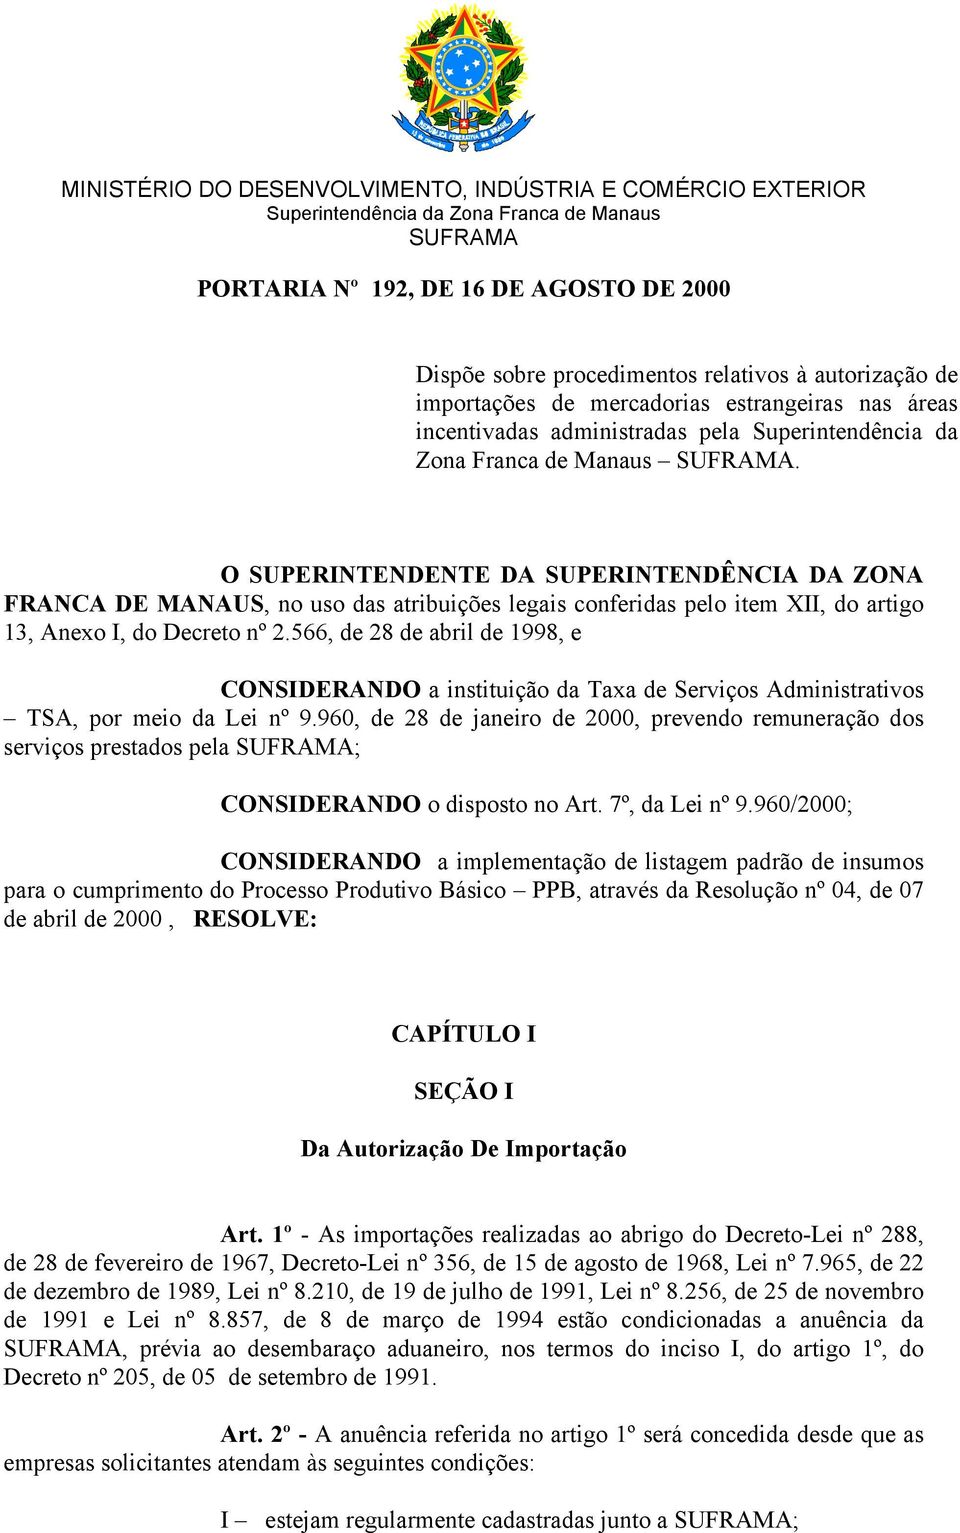 O SUPERINTENDENTE DA SUPERINTENDÊNCIA DA ZONA FRANCA DE MANAUS, no uso das atribuições legais conferidas pelo item XII, do artigo 13, Anexo I, do Decreto nº 2.